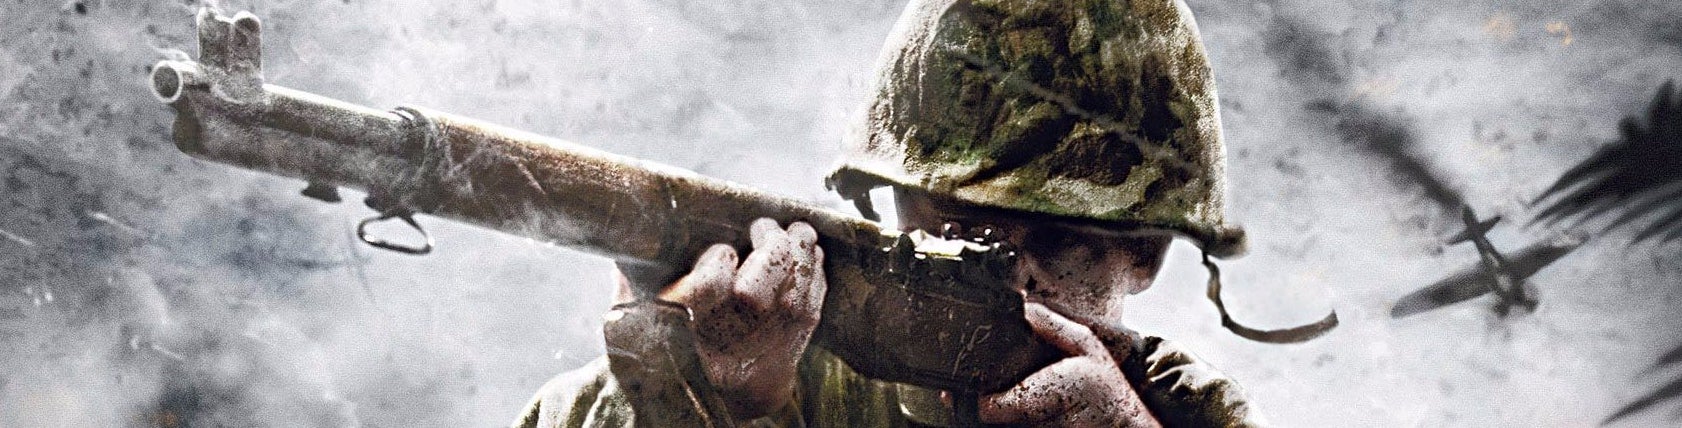 Immagine di Come si presenta Call of Duty: WW2 su Xbox One X e PS4 Pro? - articolo